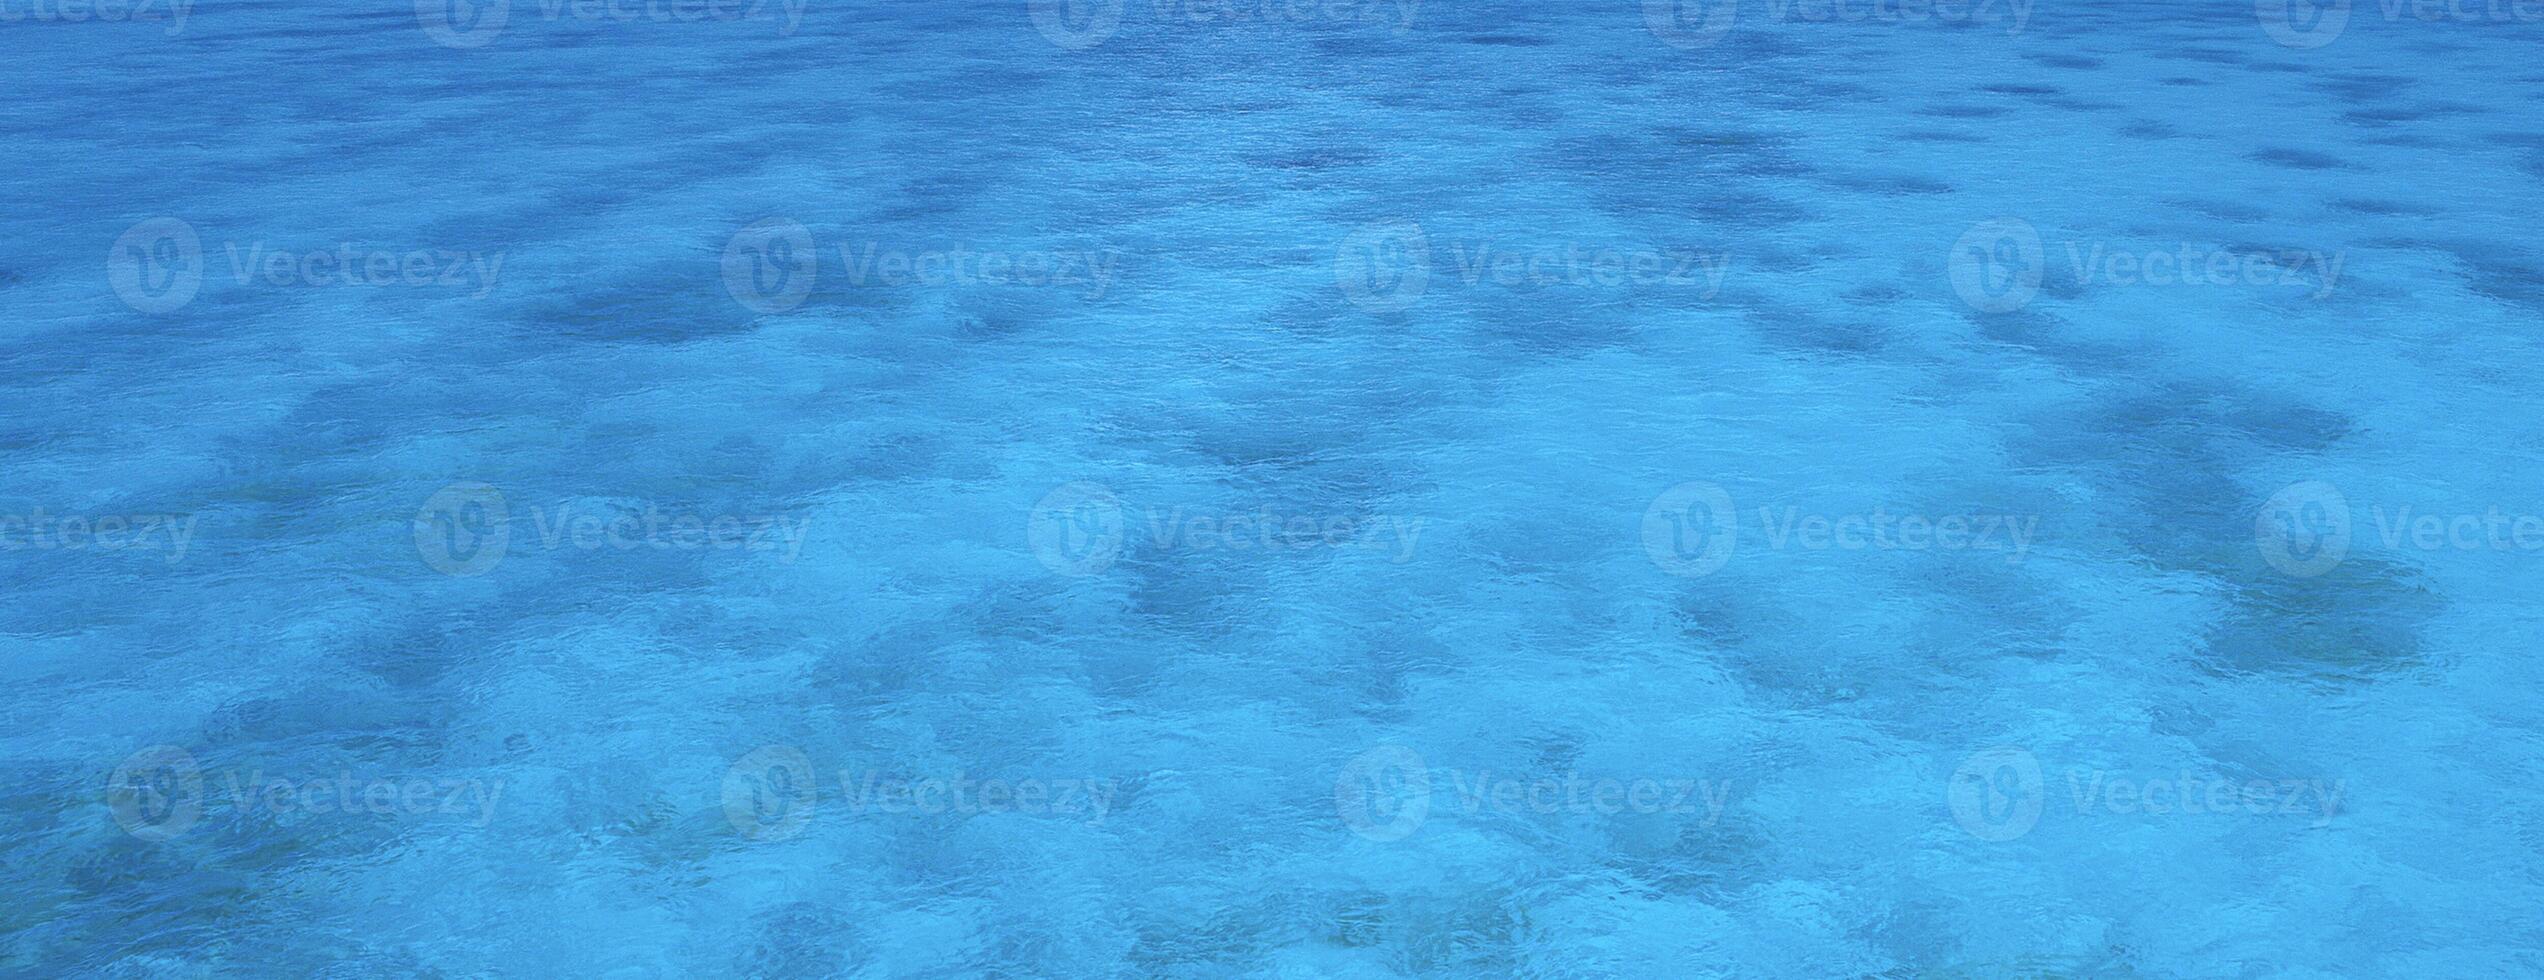 klart blått hav foto